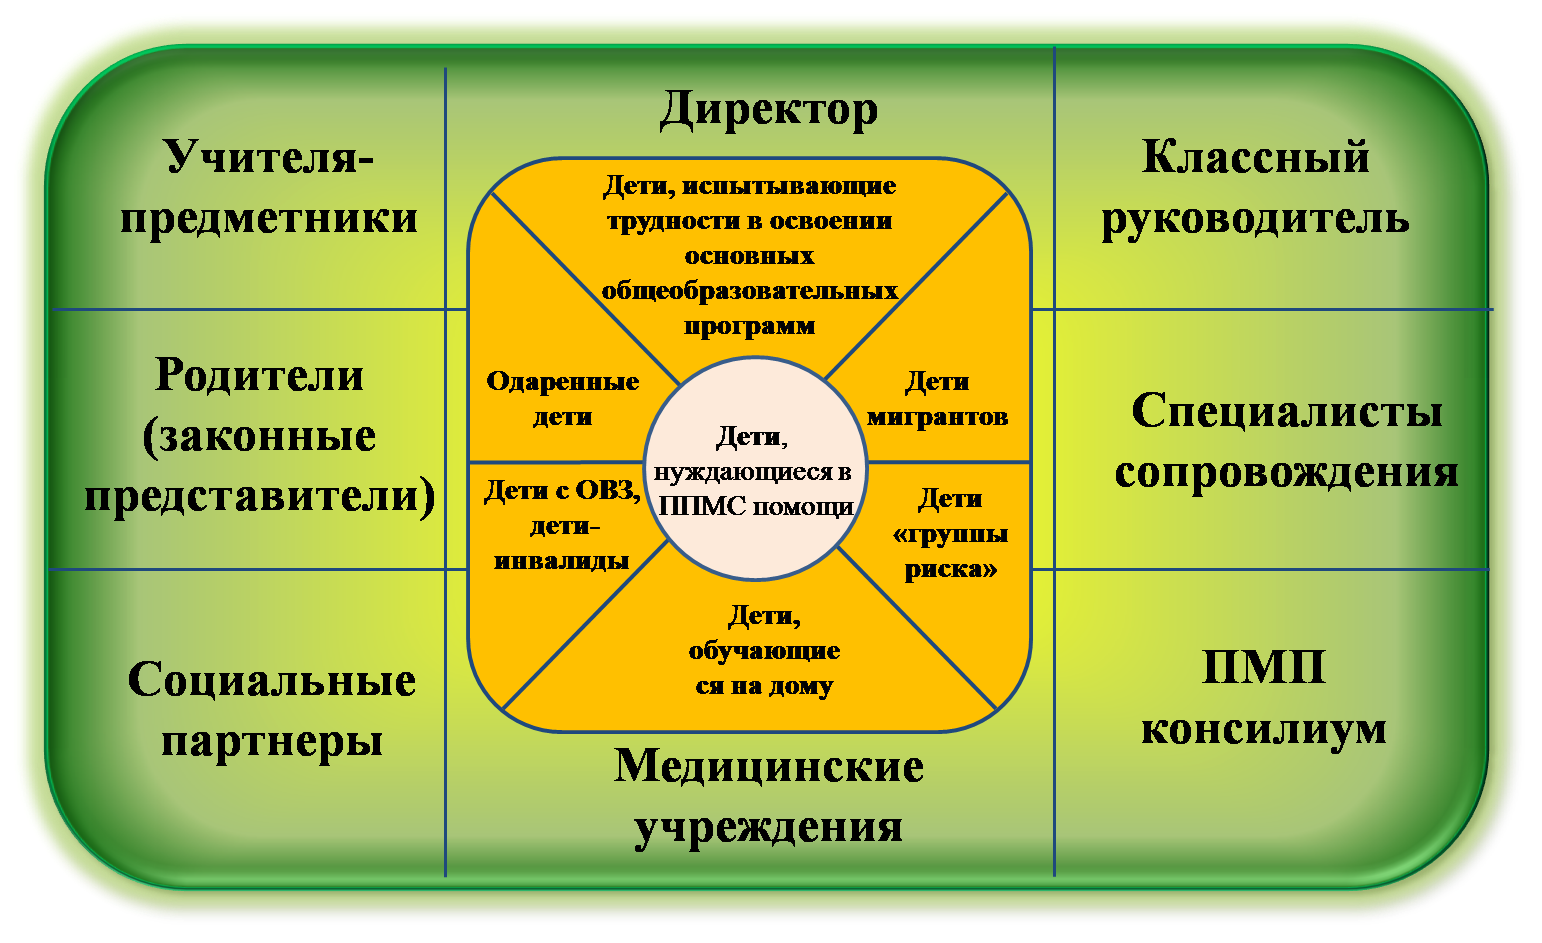 Организационная структура ППМС-службы